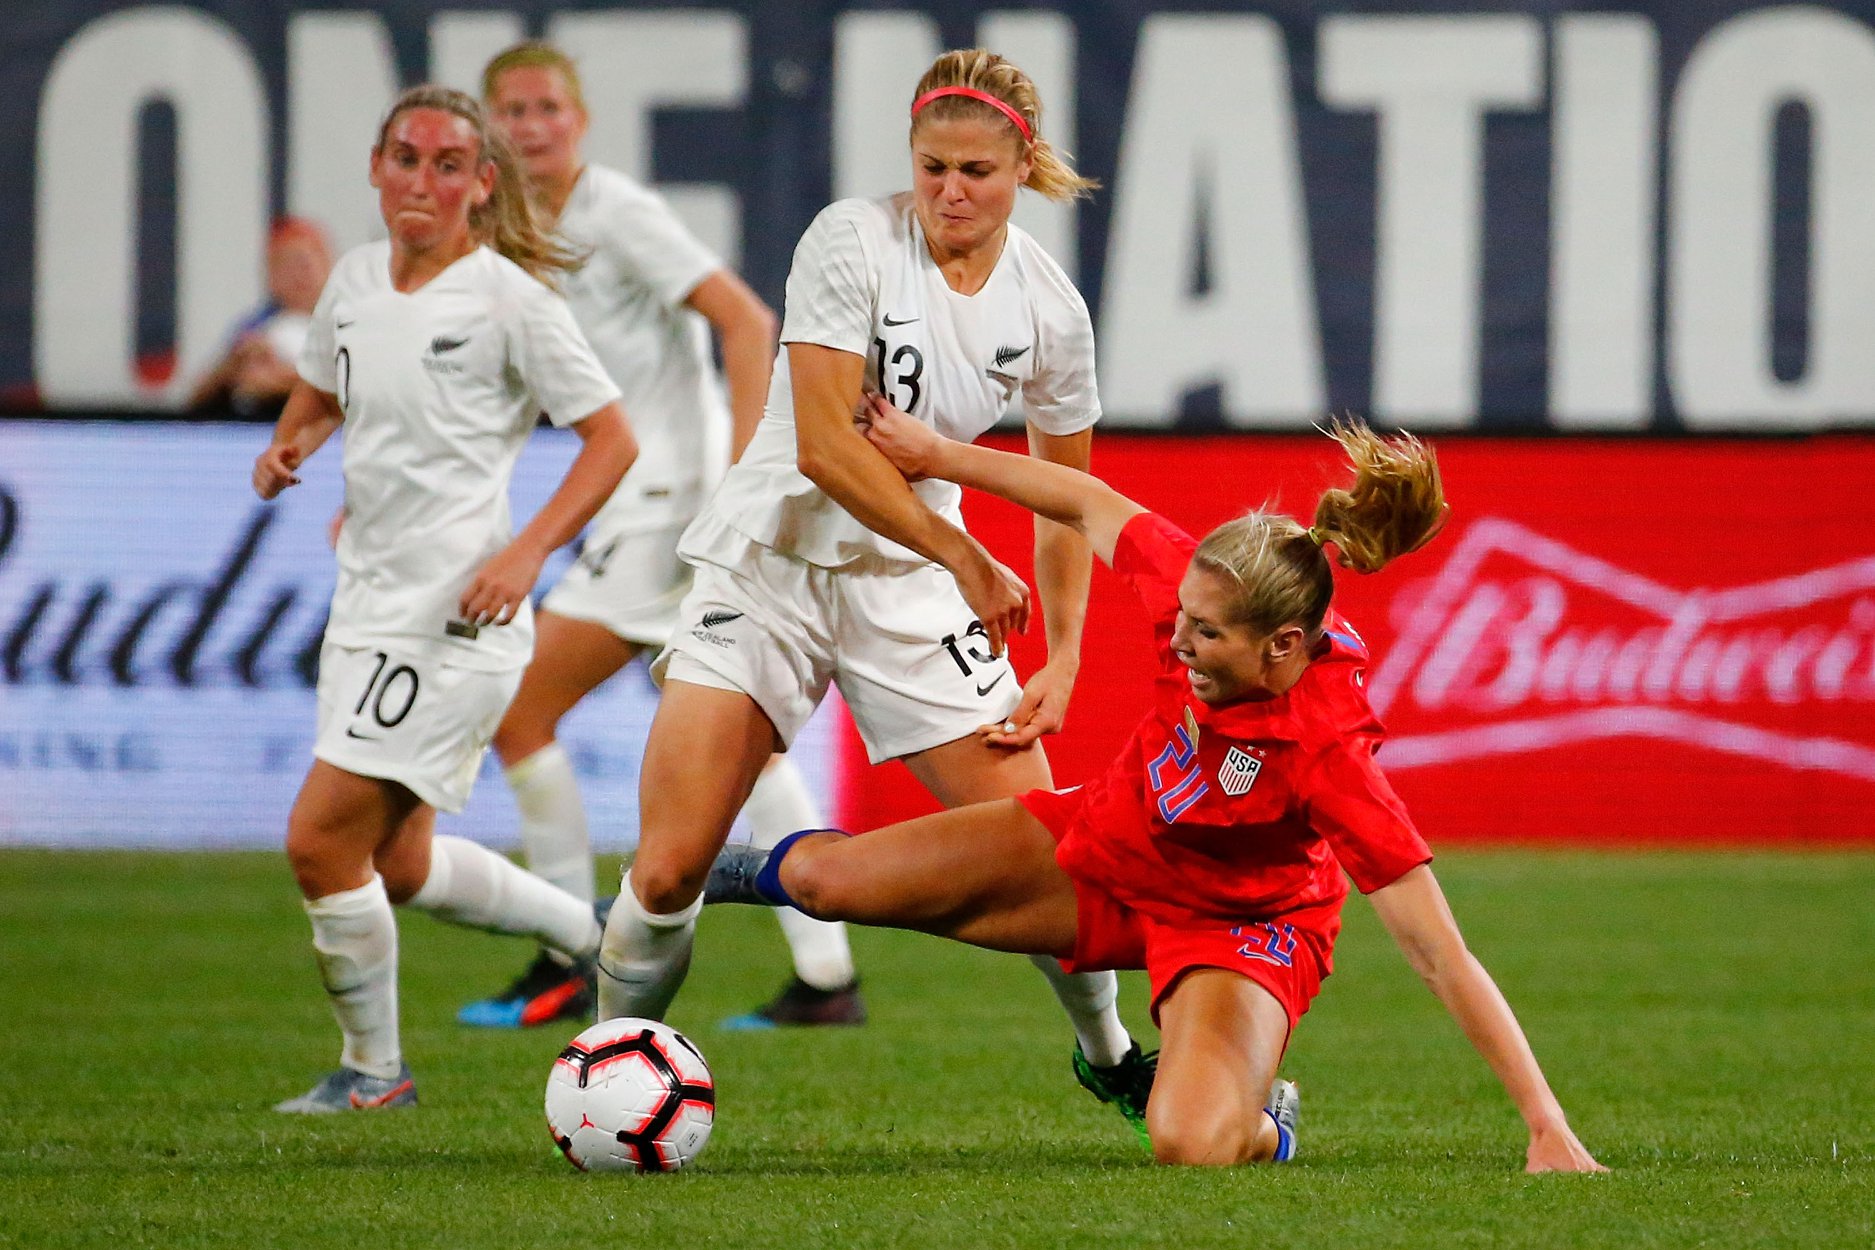 De qué está hecha y cuánto pesa la Copa del Mundial Femenino? Lo que hay  que saber del trofeo